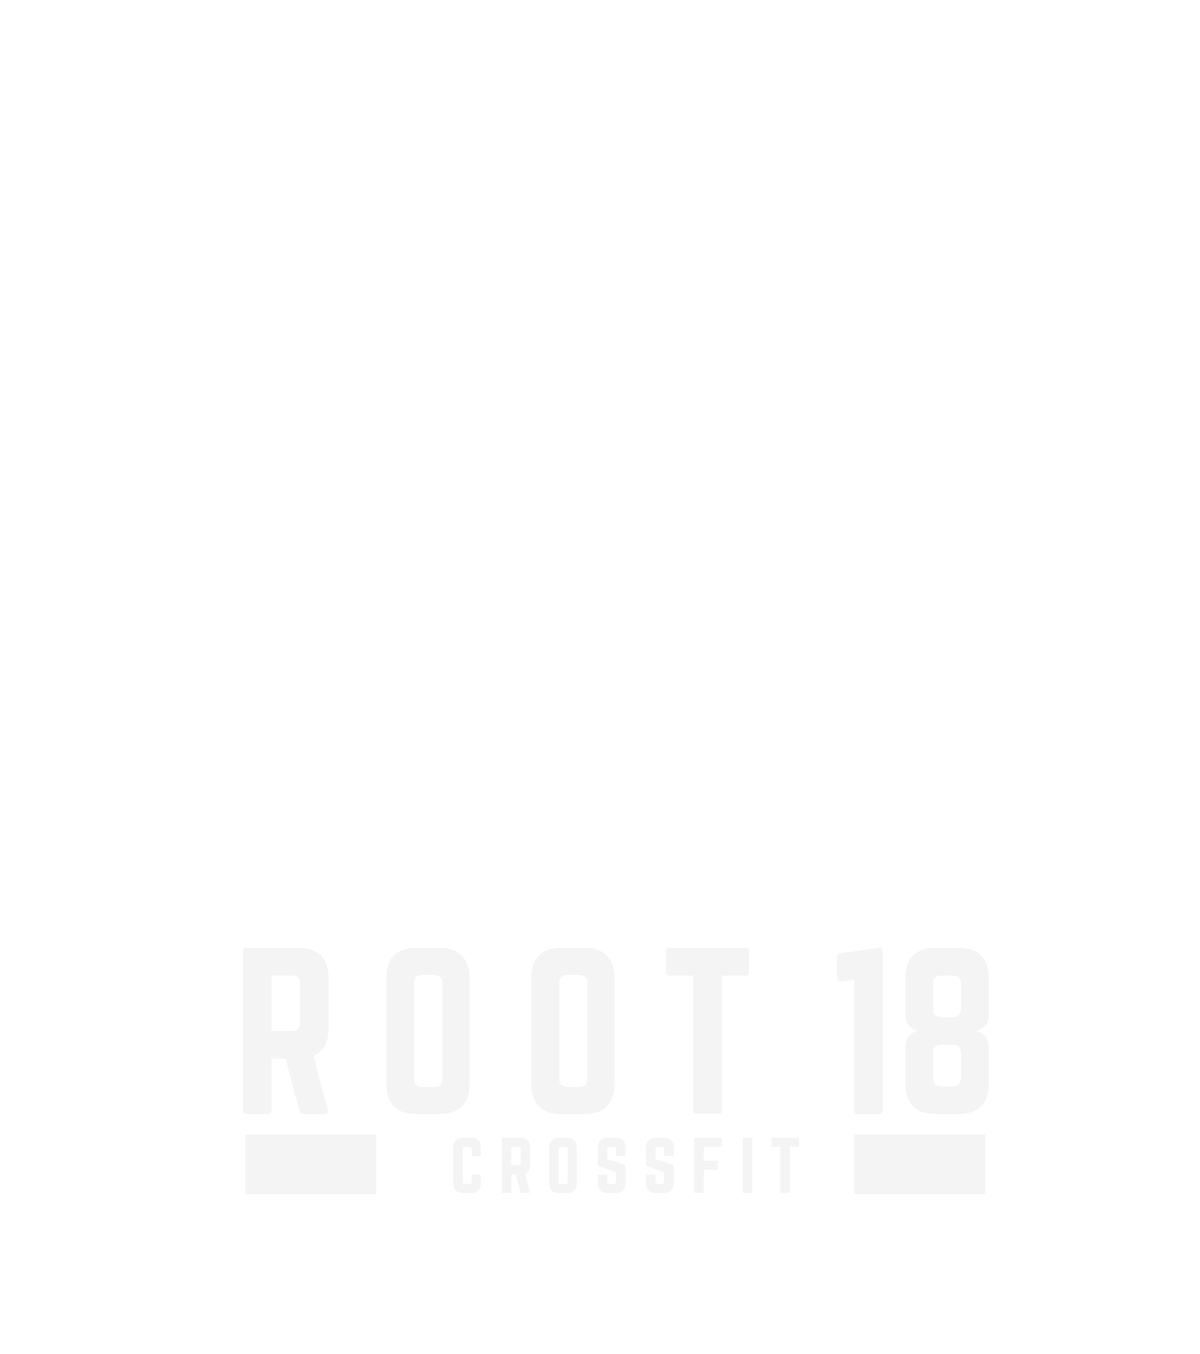 Root 18 CrossFit